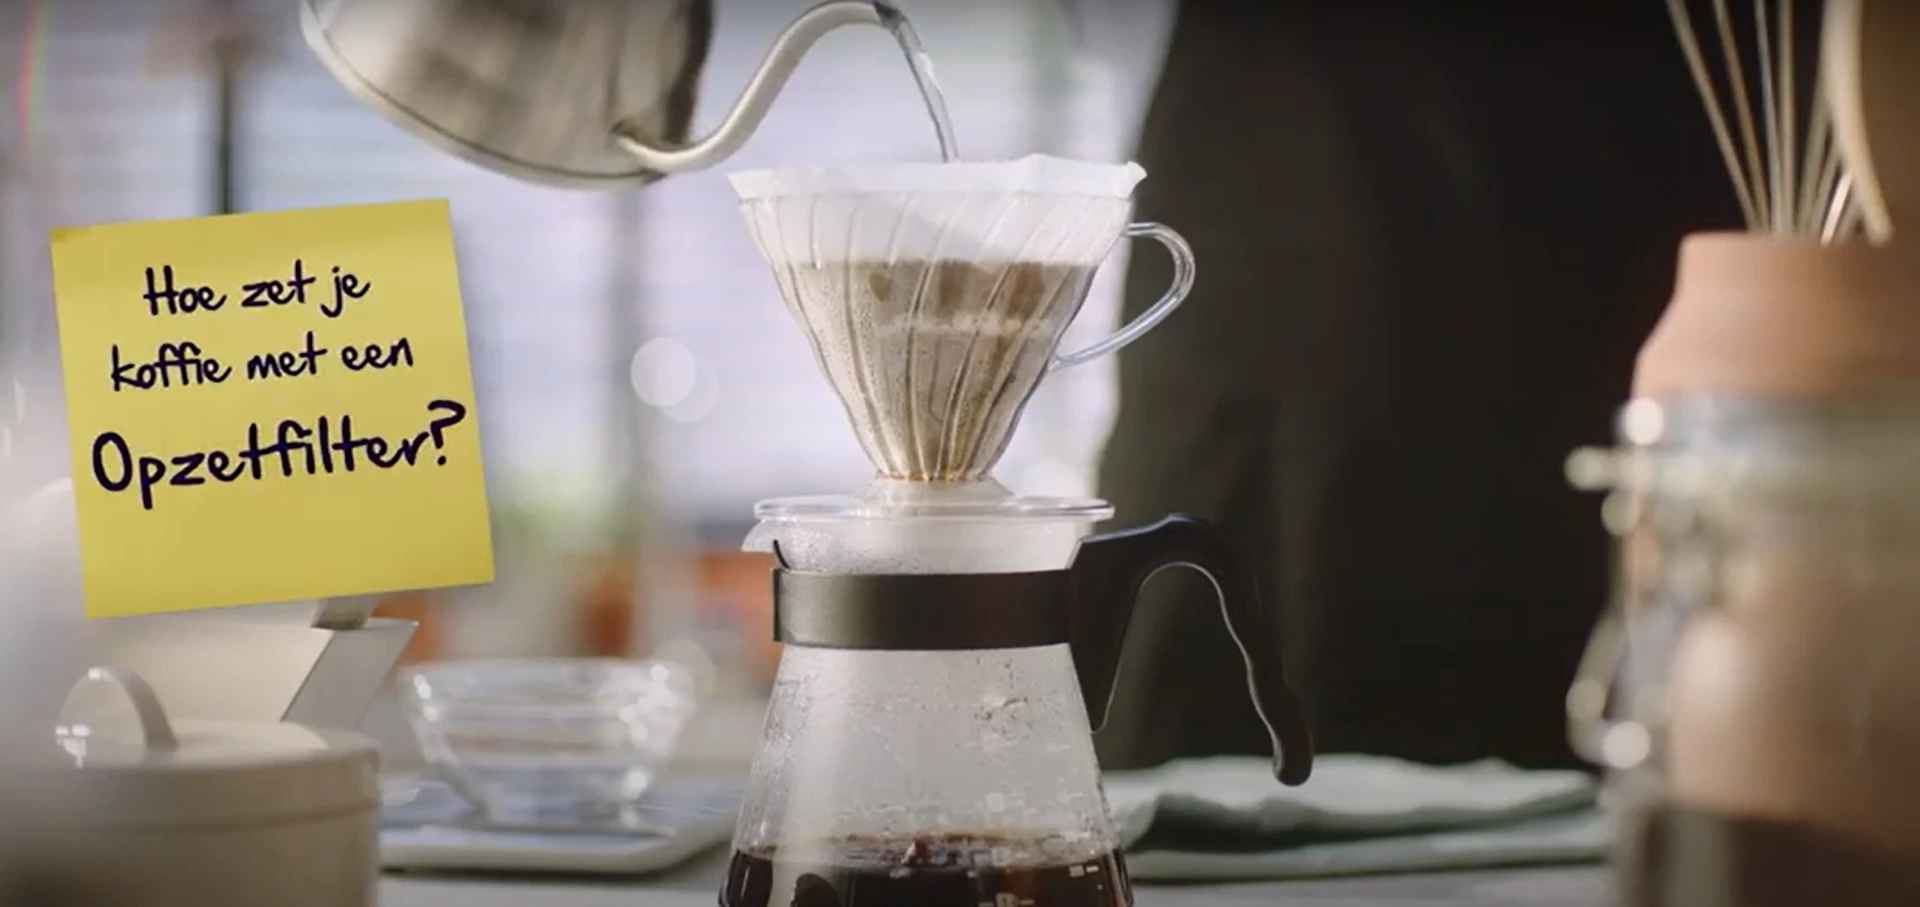 Koffie die gezet wordt door een filter met de tekst: 'Hoe zet je koffie met een opzetfilter?'.